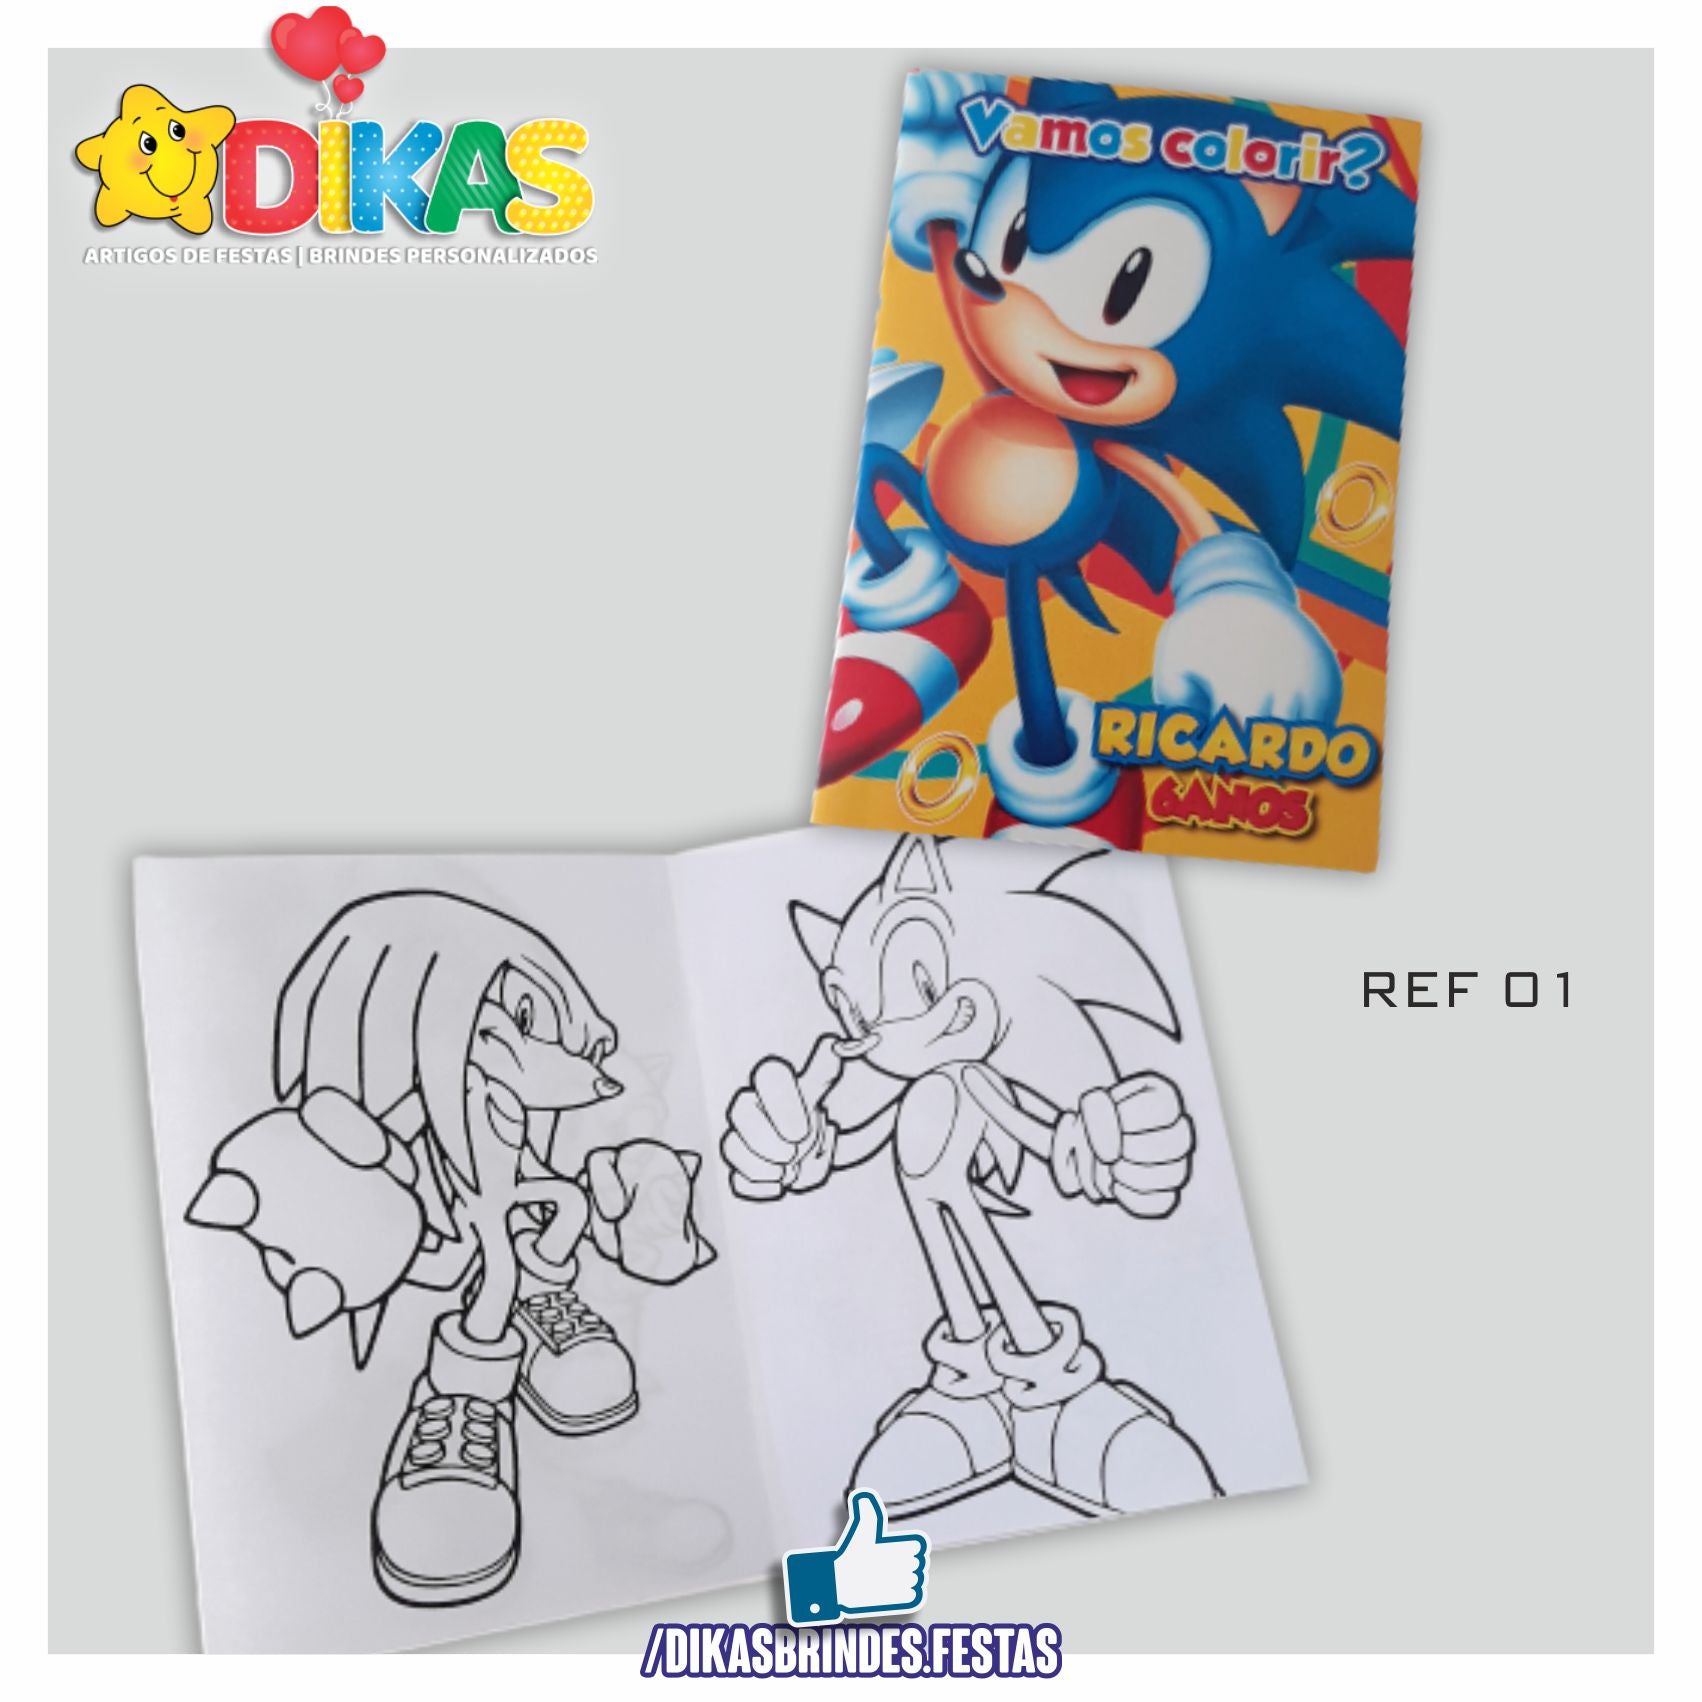 Livro para colorir Sonic - Sonic - Just Color Crianças : Páginas